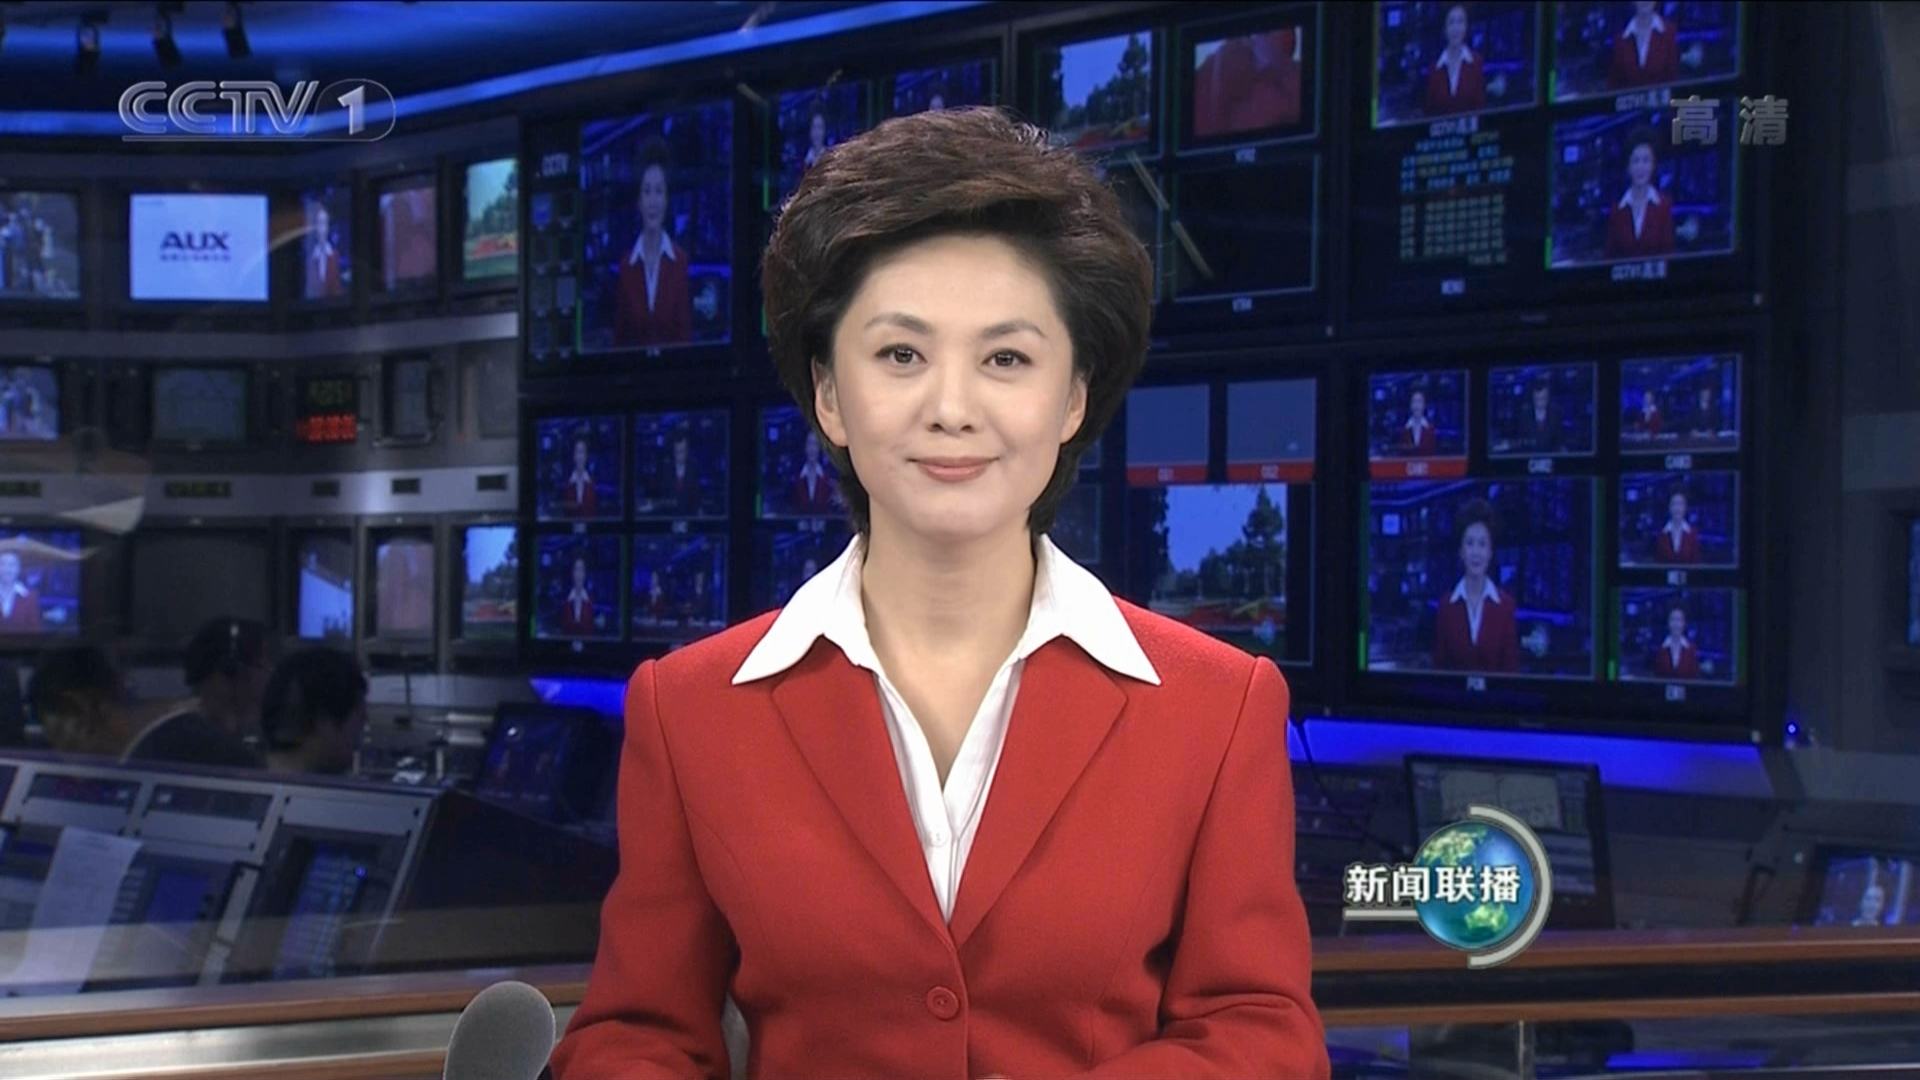 安泽:cctv4快乐 汉语节目主持人 海霞:中央一套主播